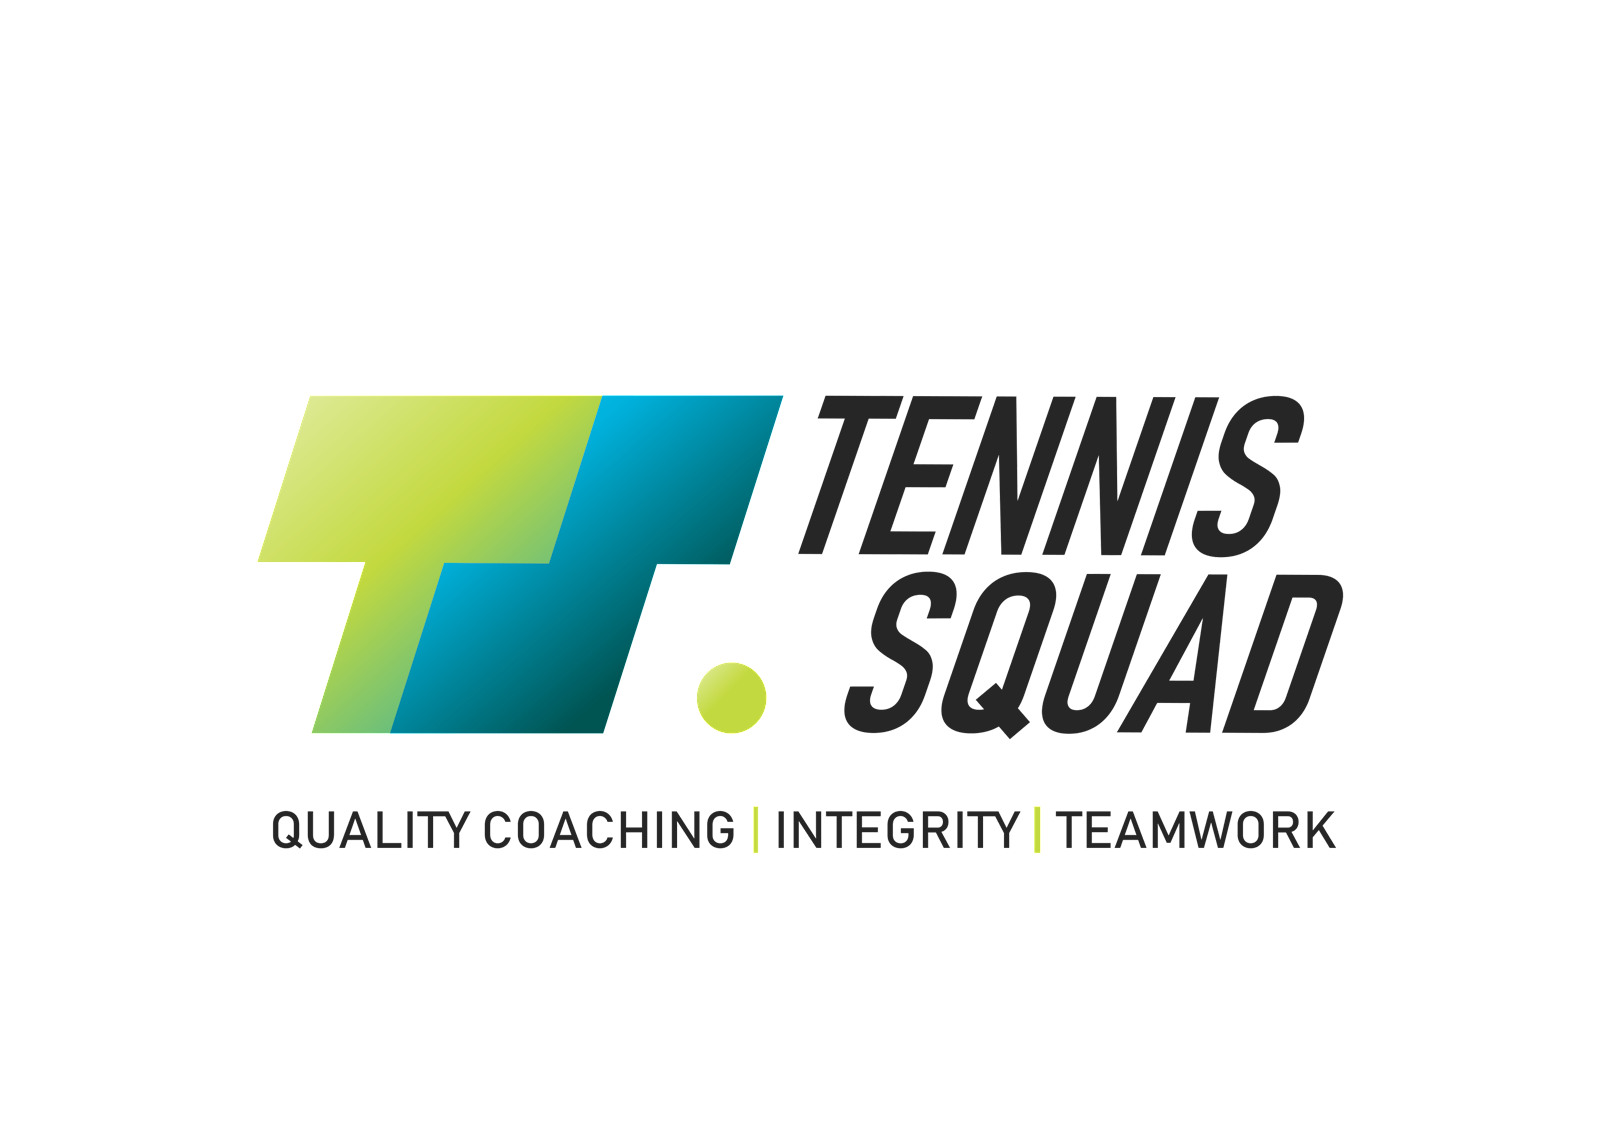 Tennis Squad